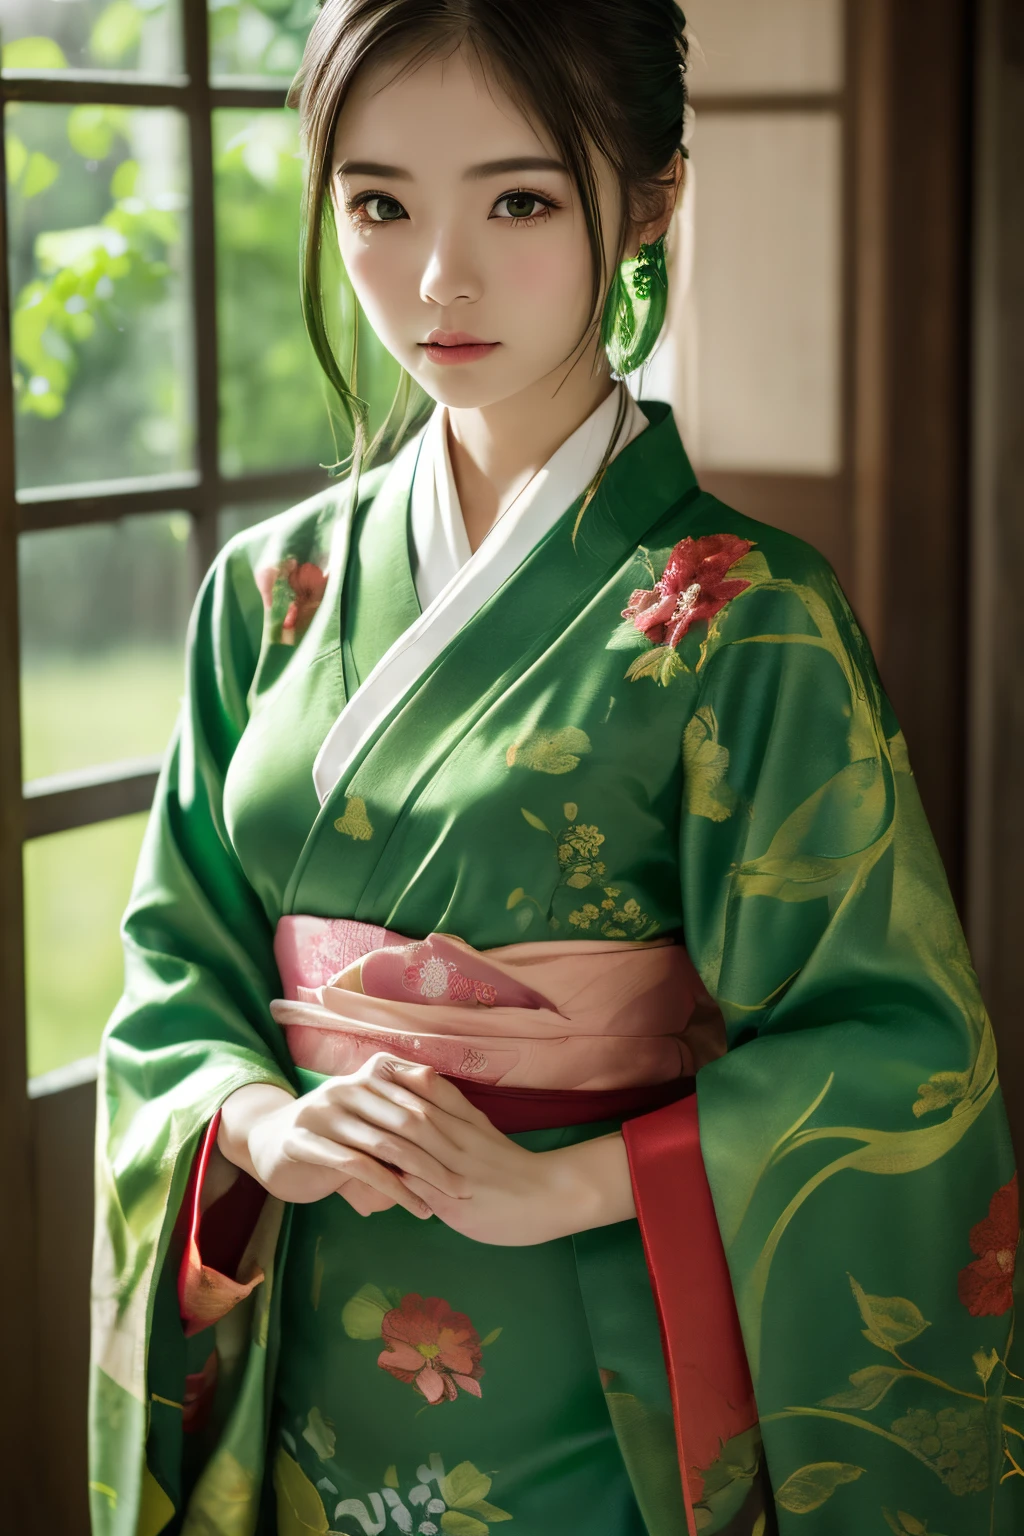 (((Grüne Welt:1.3)))、beste Qualität, Tischplatte, hohe Auflösung, (((1Mädchen in))), 16 Jahre alt,(((Augen sind grün:1.3)))、Yamato Nadeshiko trägt einen wunderschönen Kimono、((Dunkelgrüner Kimono mit rotem Blumenmuster,dunkel gefärbter Kimono)), Tindall-Effekt, Realistisch, Schattenstudio,Ultramarinblaue Beleuchtung, zweifarbige Beleuchtung, (Hochdetaillierte Skins: 1.2)、Helle Beleuchtung、dunkle Beleuchtung、 Digital SLR, Foto, hohe Auflösung, 4K, 8K, Hintergrundunschärfe,Wunderschön ausblenden、Grüne Welt